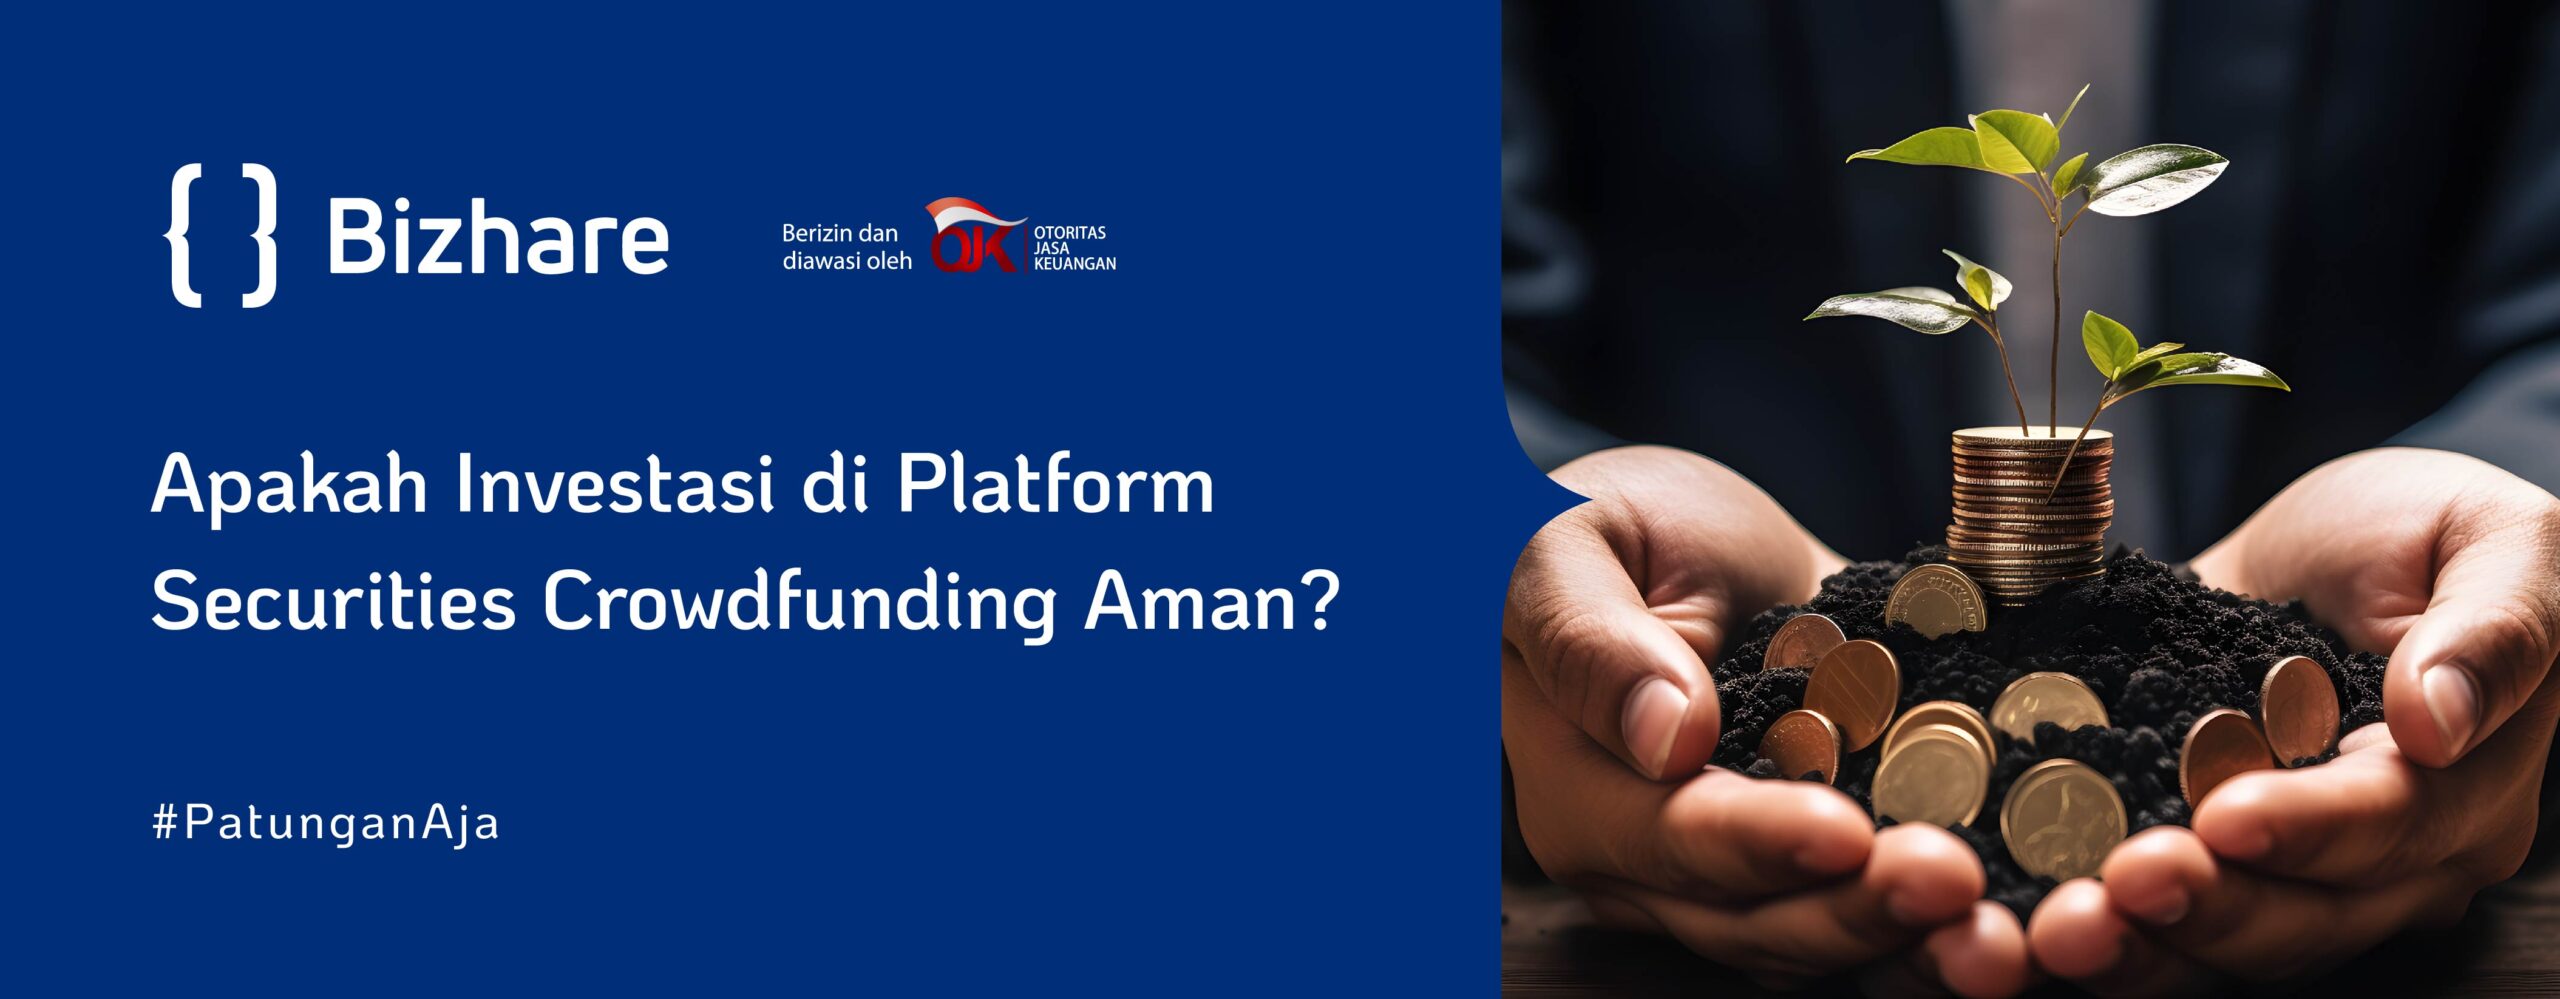 Apakah Investasi di Platform Securities Crowdfunding Aman?